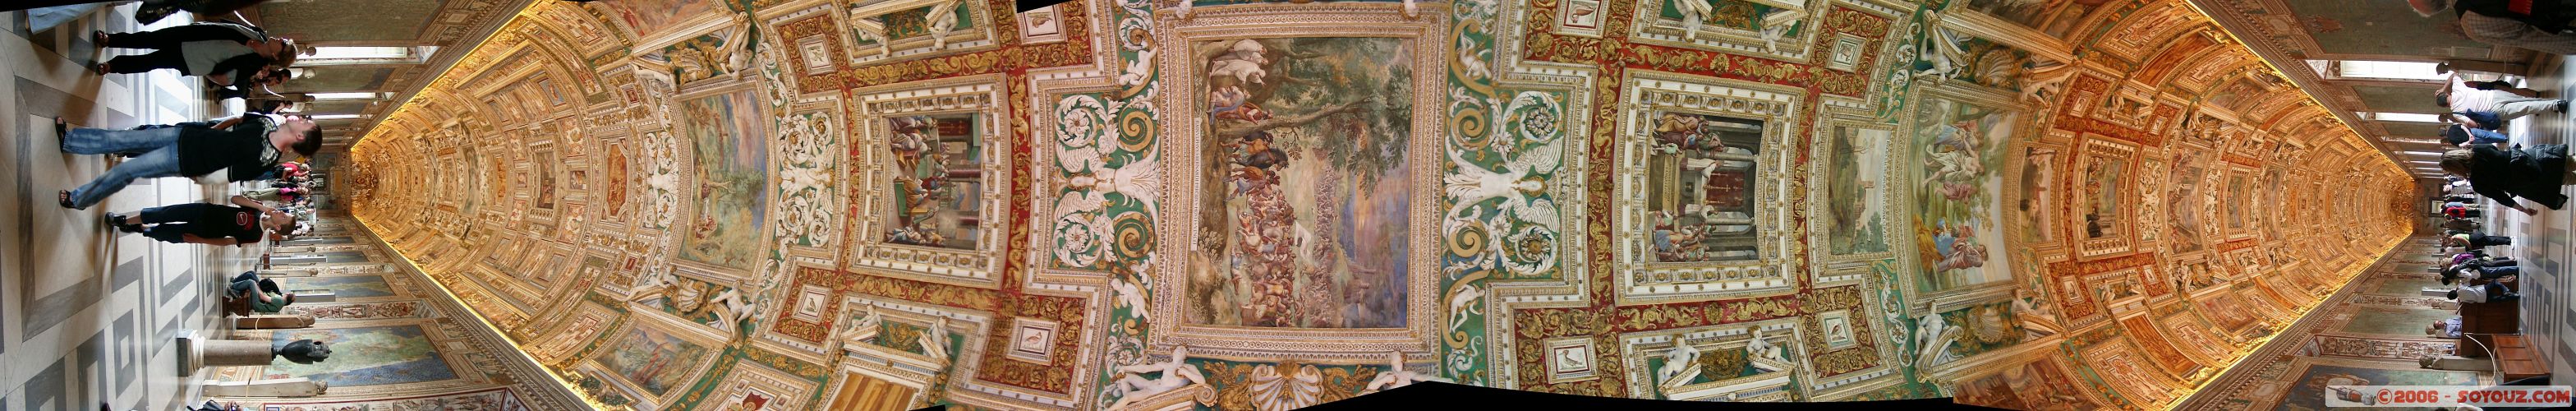 Mus�e du Vatican - vue "panoramique" de la gallerie
